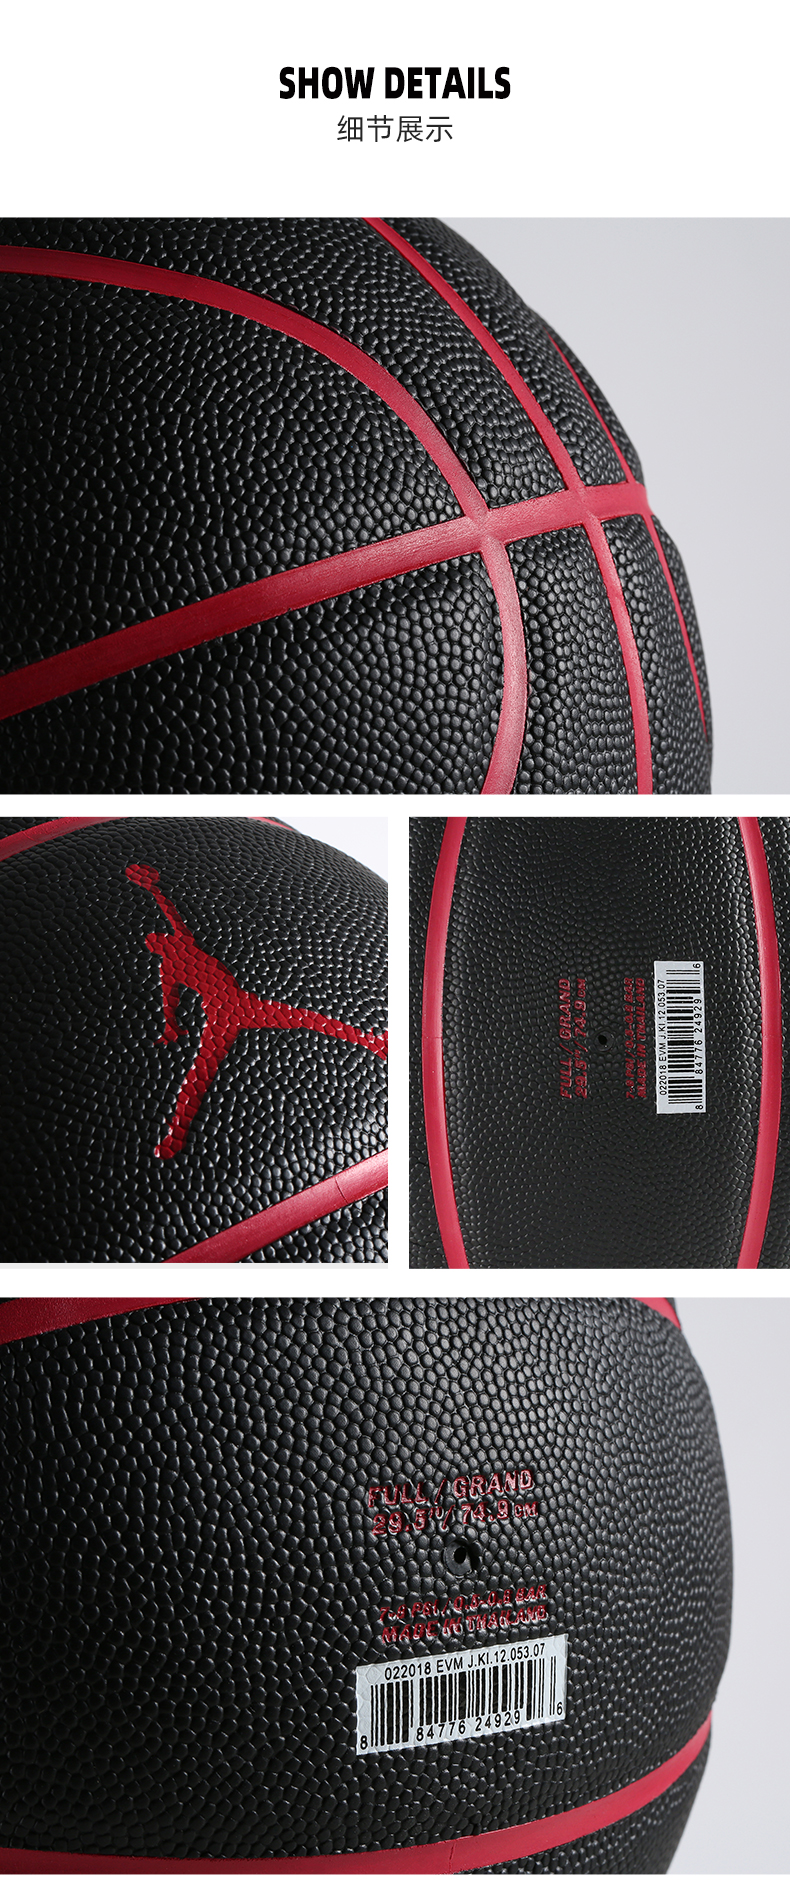 Quả Bóng Rổ Nike Jordan Cao Cấp Chuyên Dụng